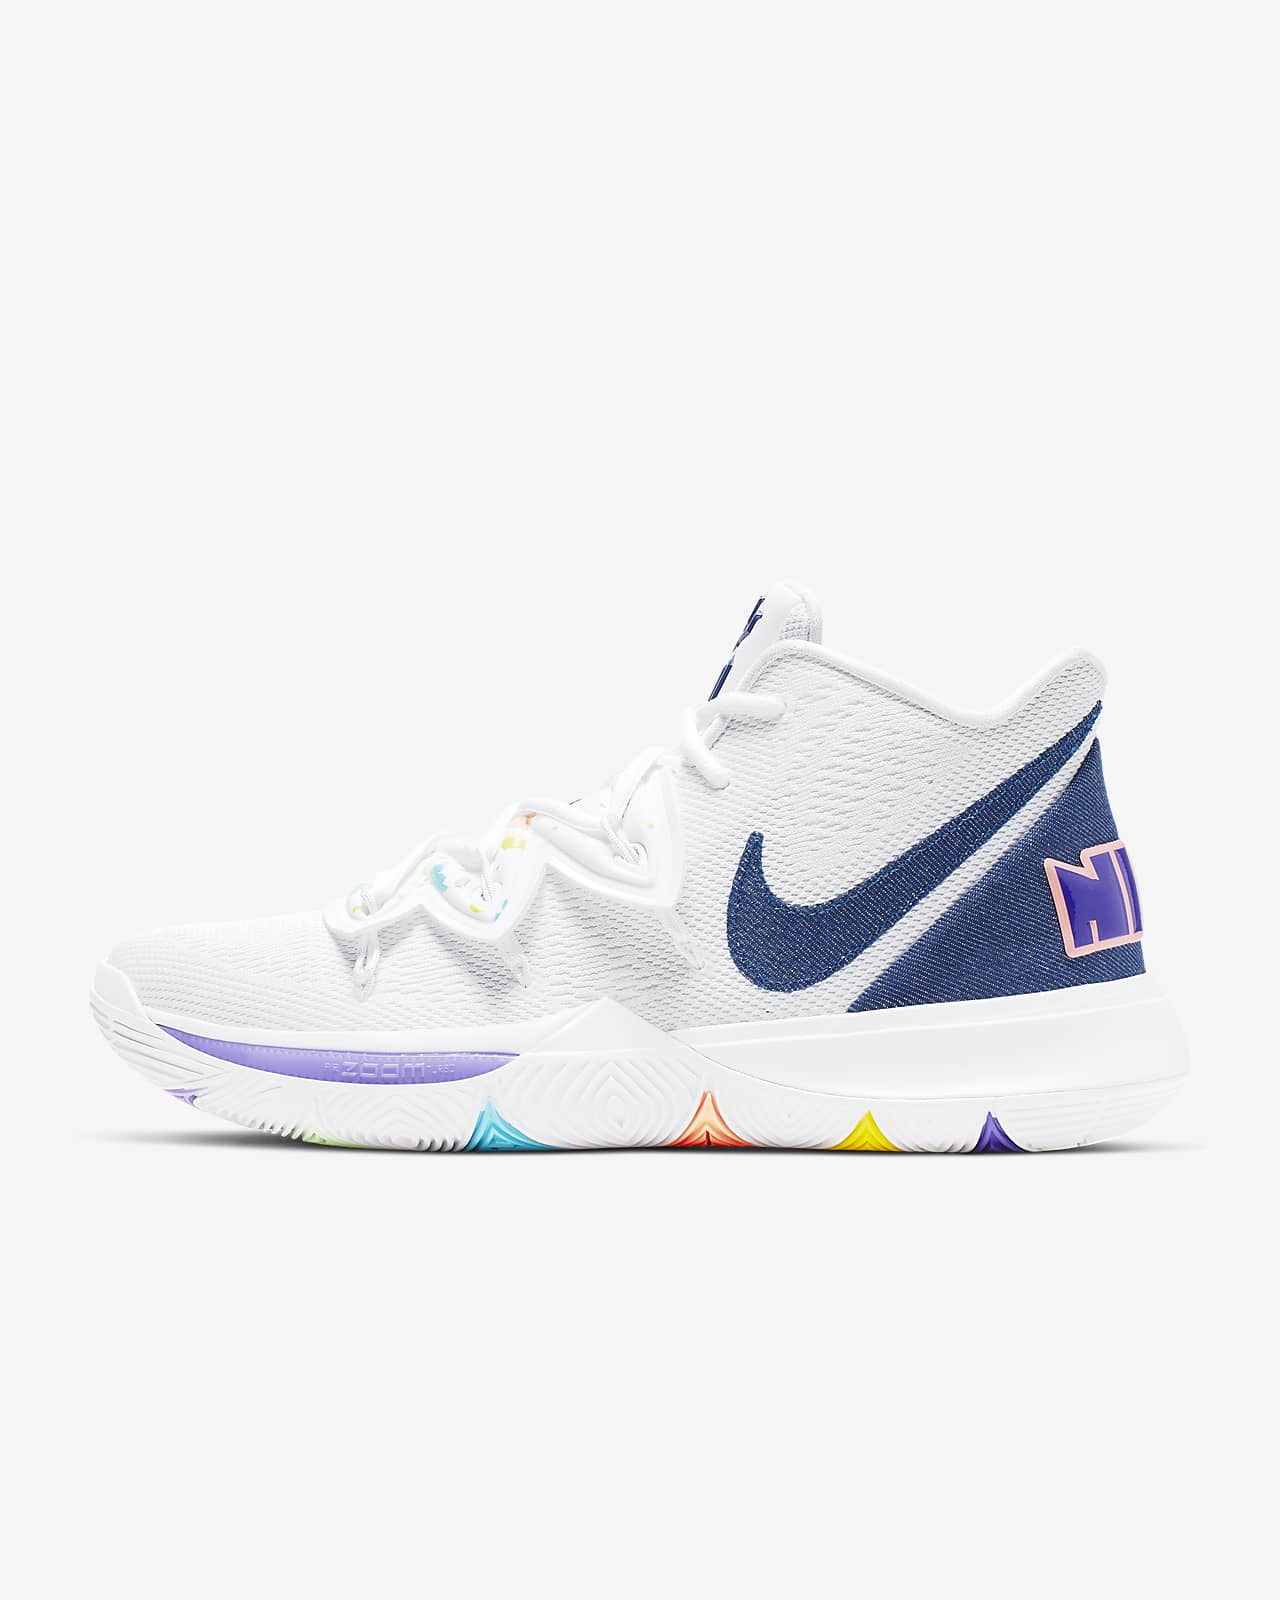 Kyrie 5 Basketball Shoe. Nike SG